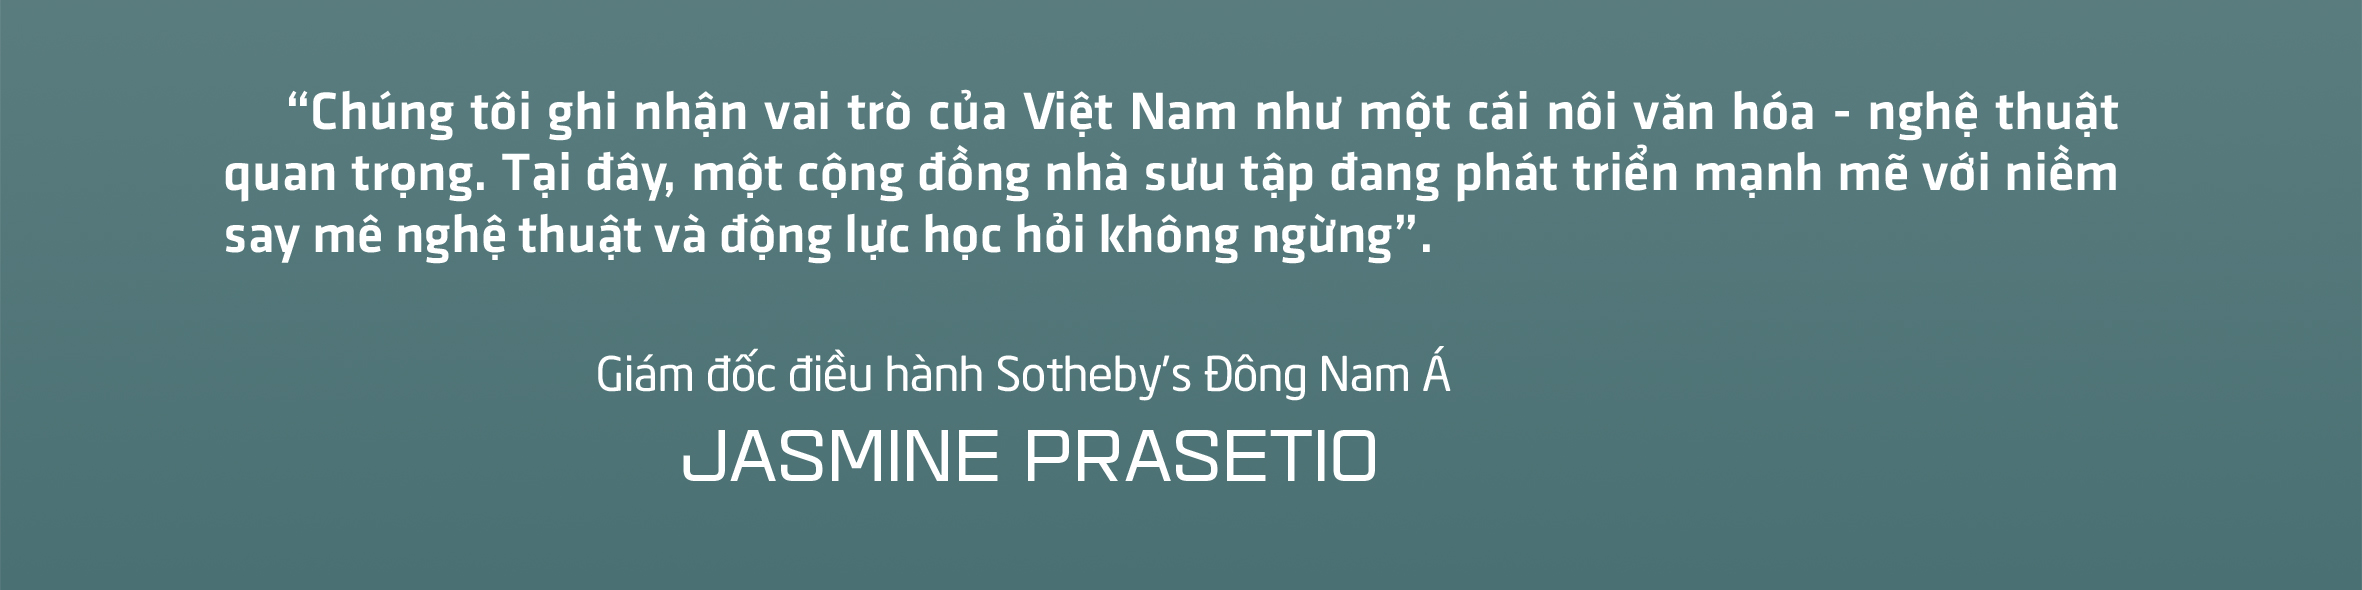 Sotheby’s lần đầu ở Việt Nam: Để ngắm tranh với niềm rung động - Ảnh 10.